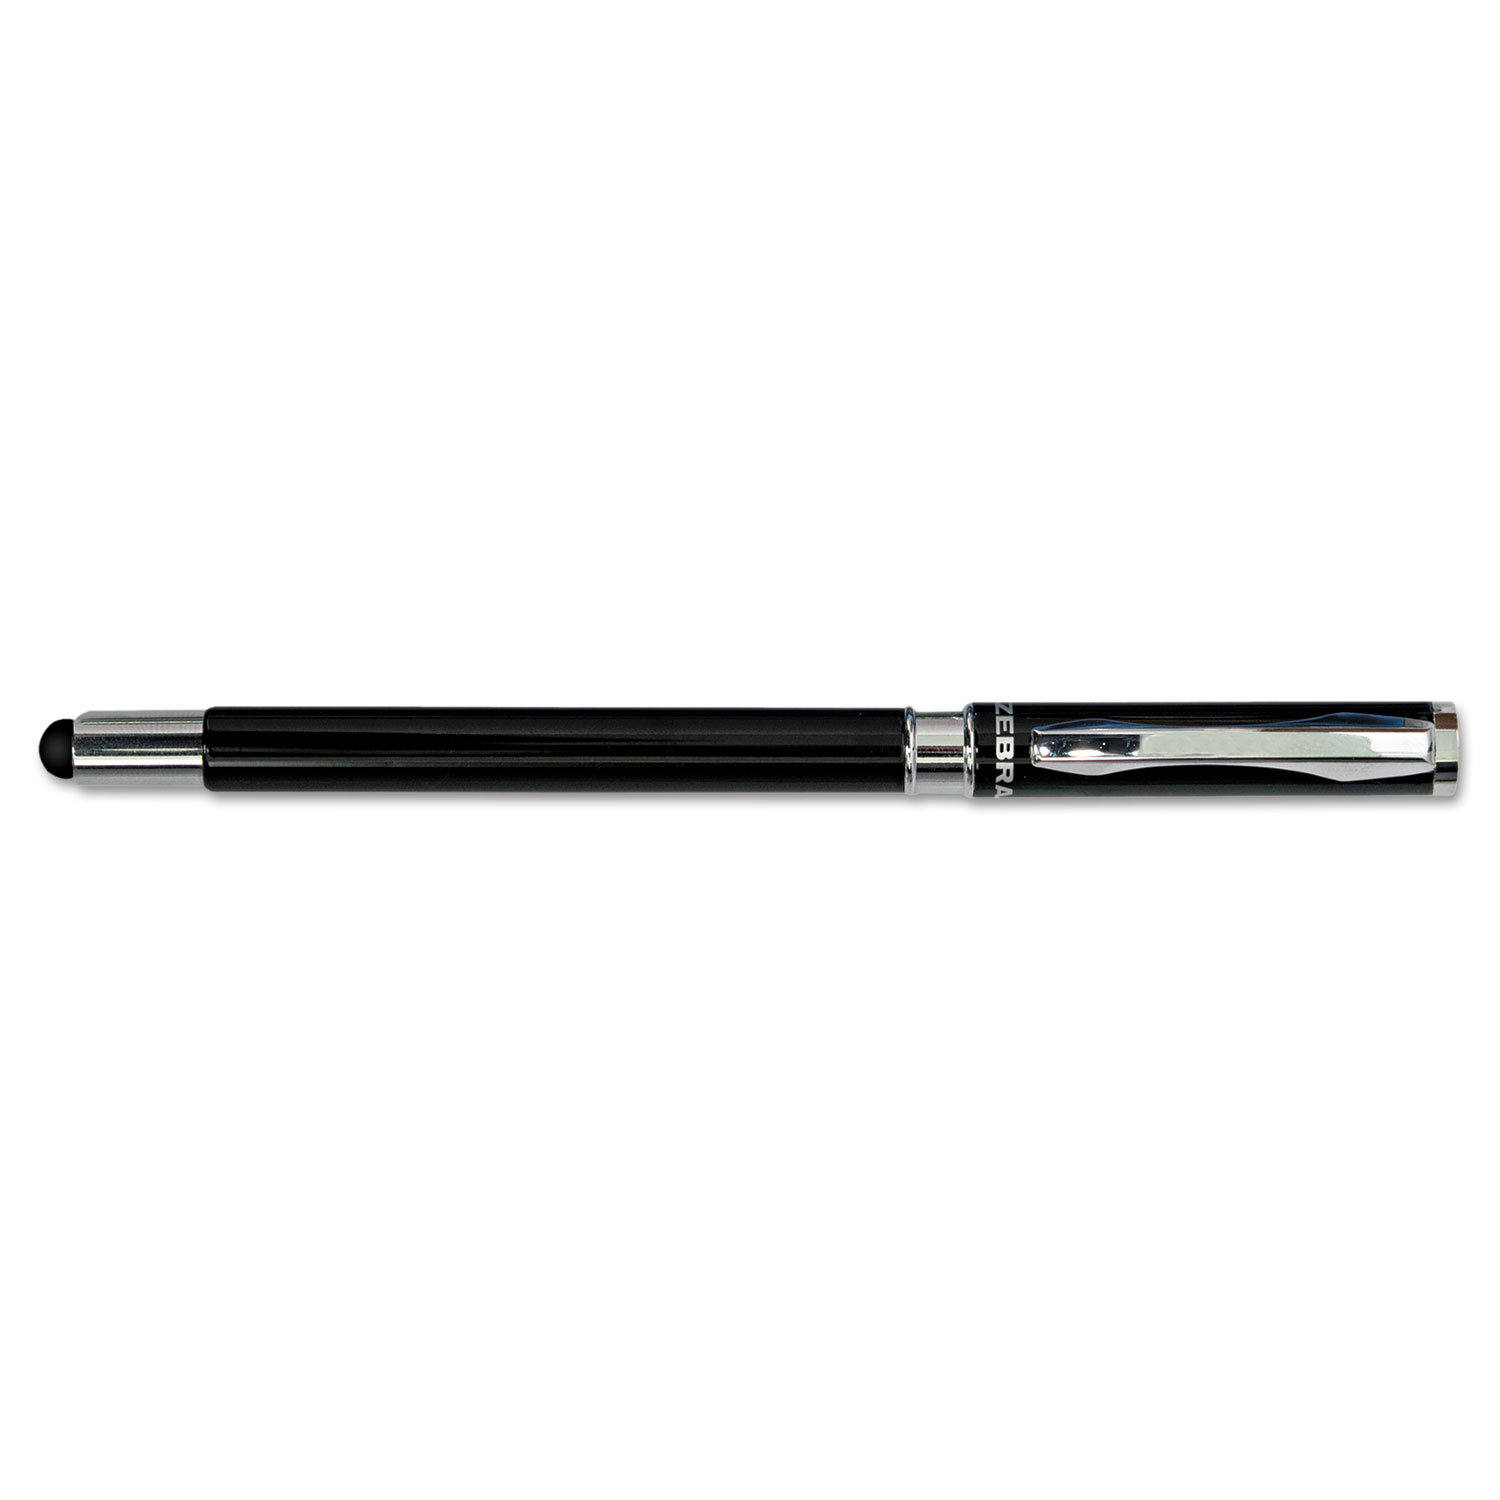 StylusPen Capped Ballpoint Pen/Stylus, Black